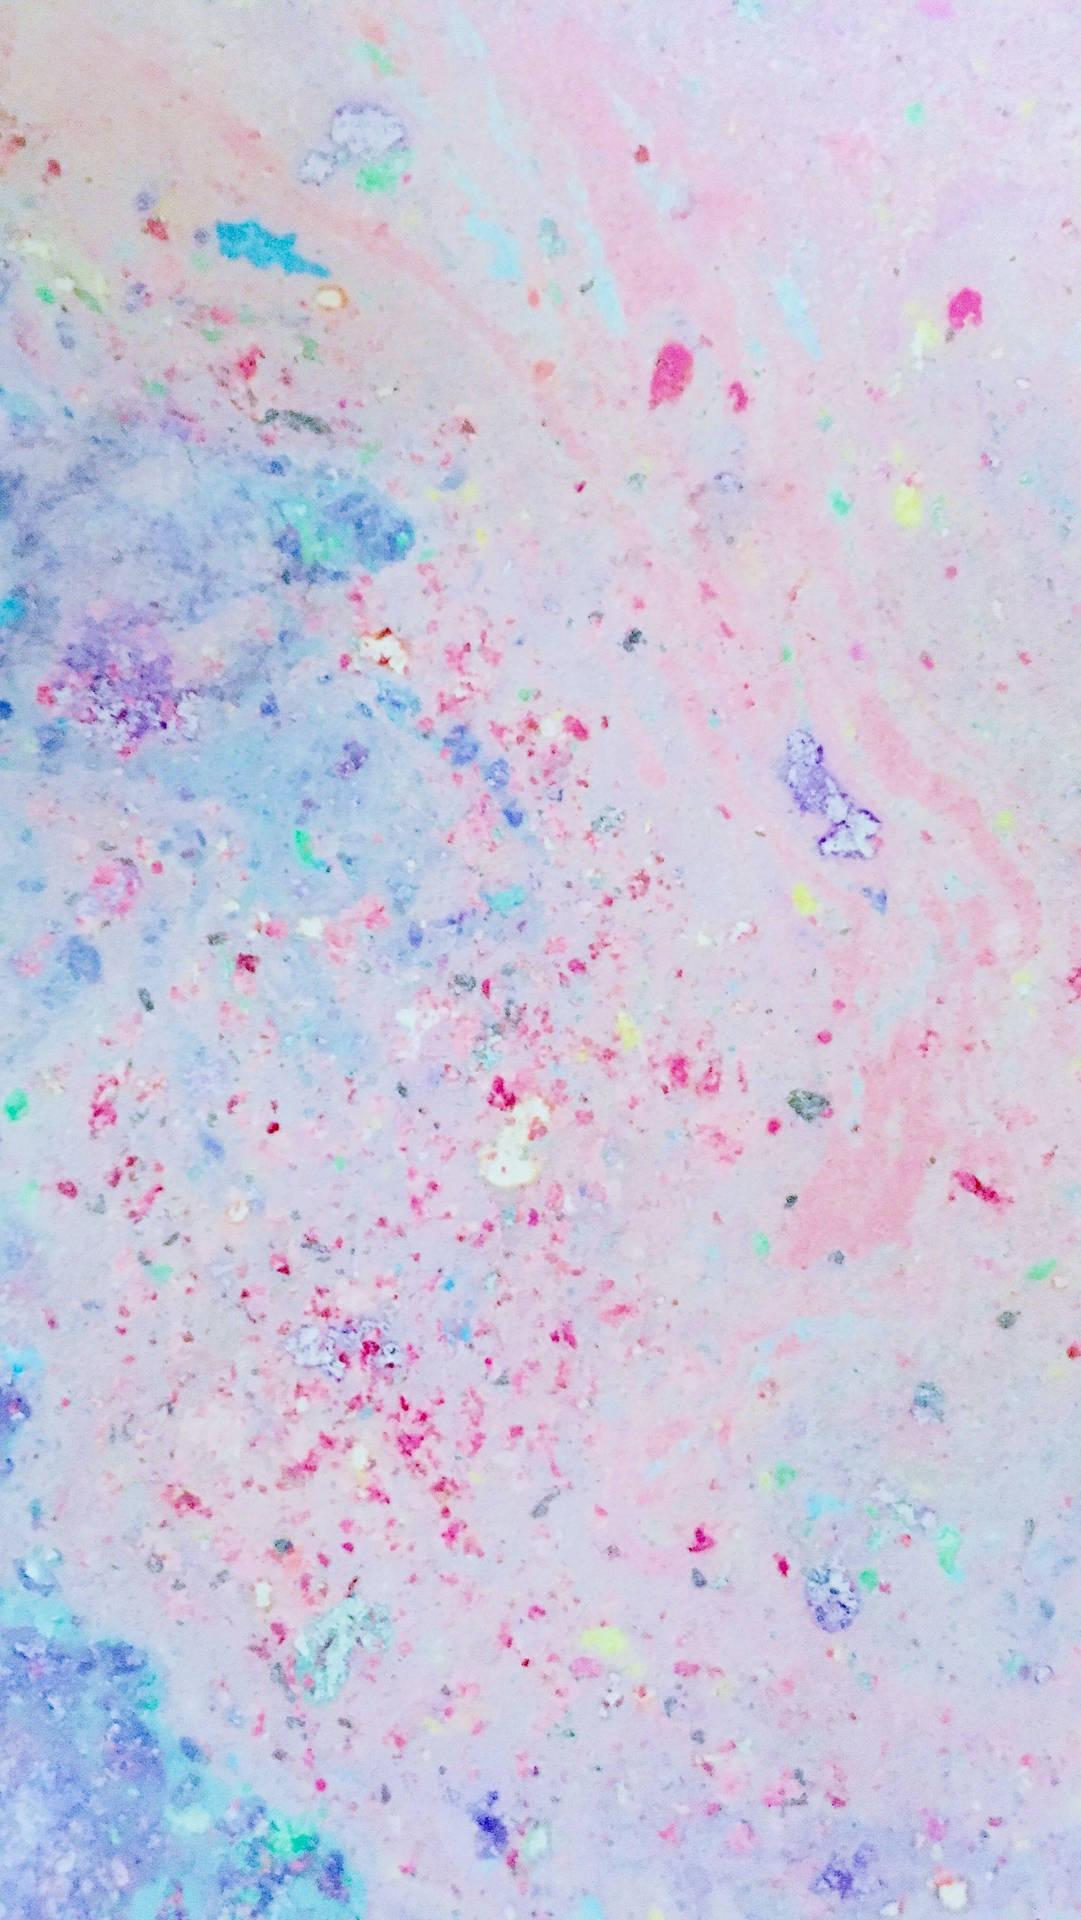 Pastel Aesthetic Paint Splatter Background